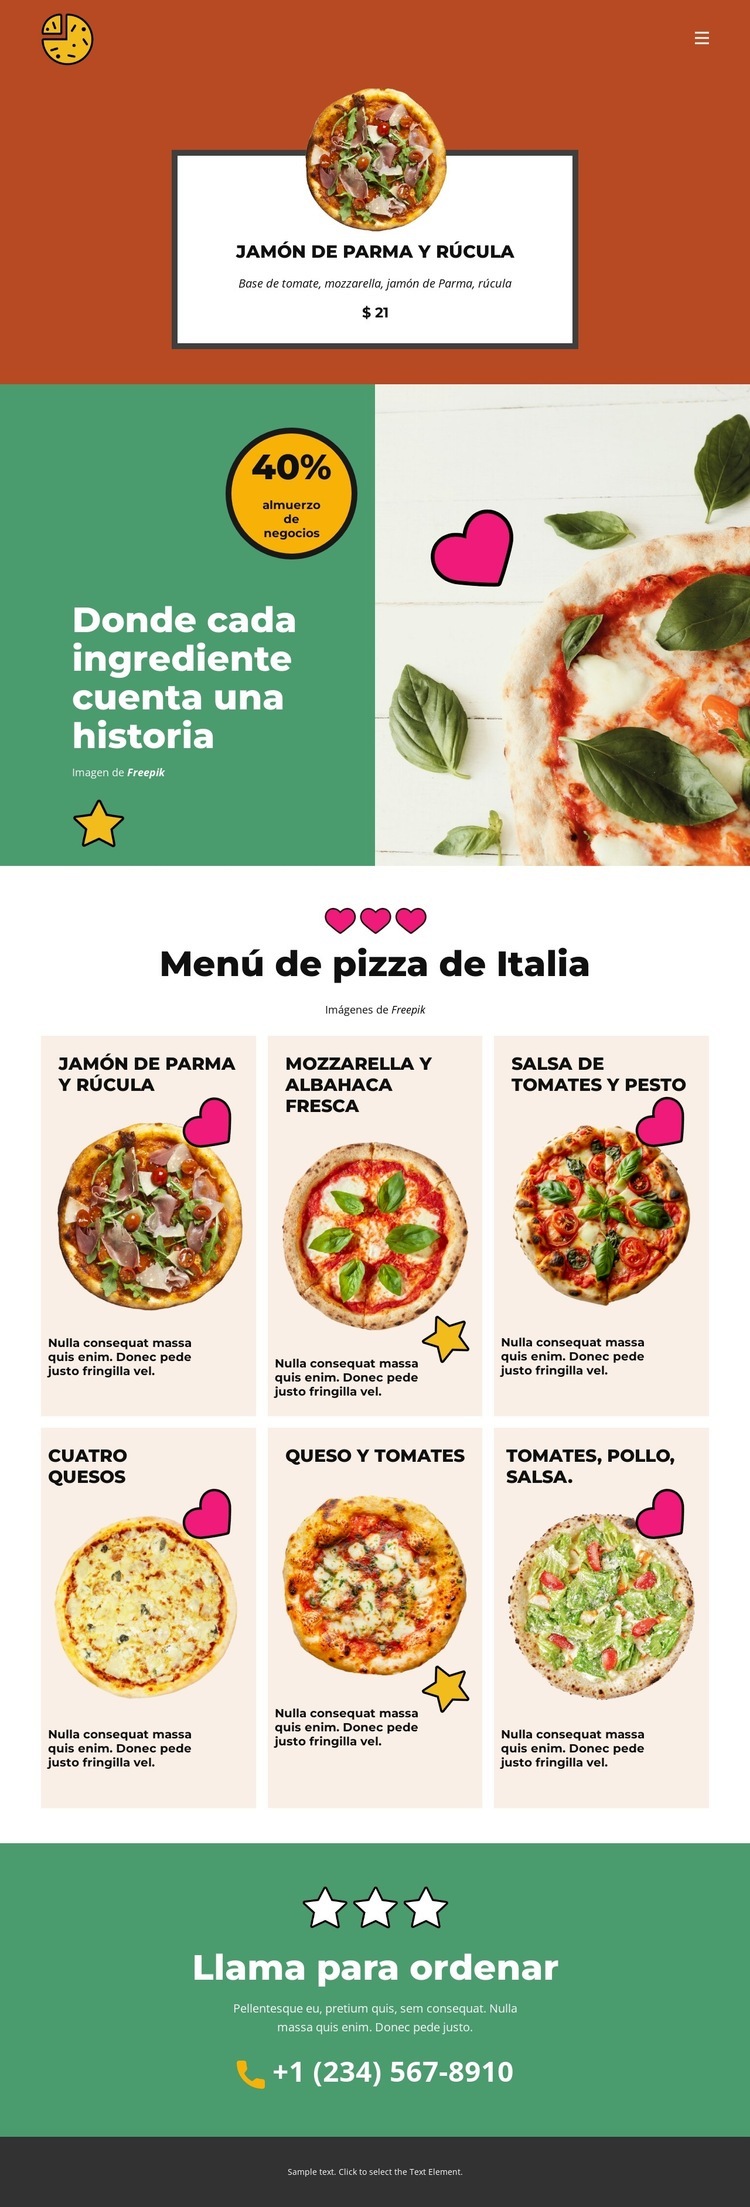 Fun Facts about Pizza Plantillas de creación de sitios web